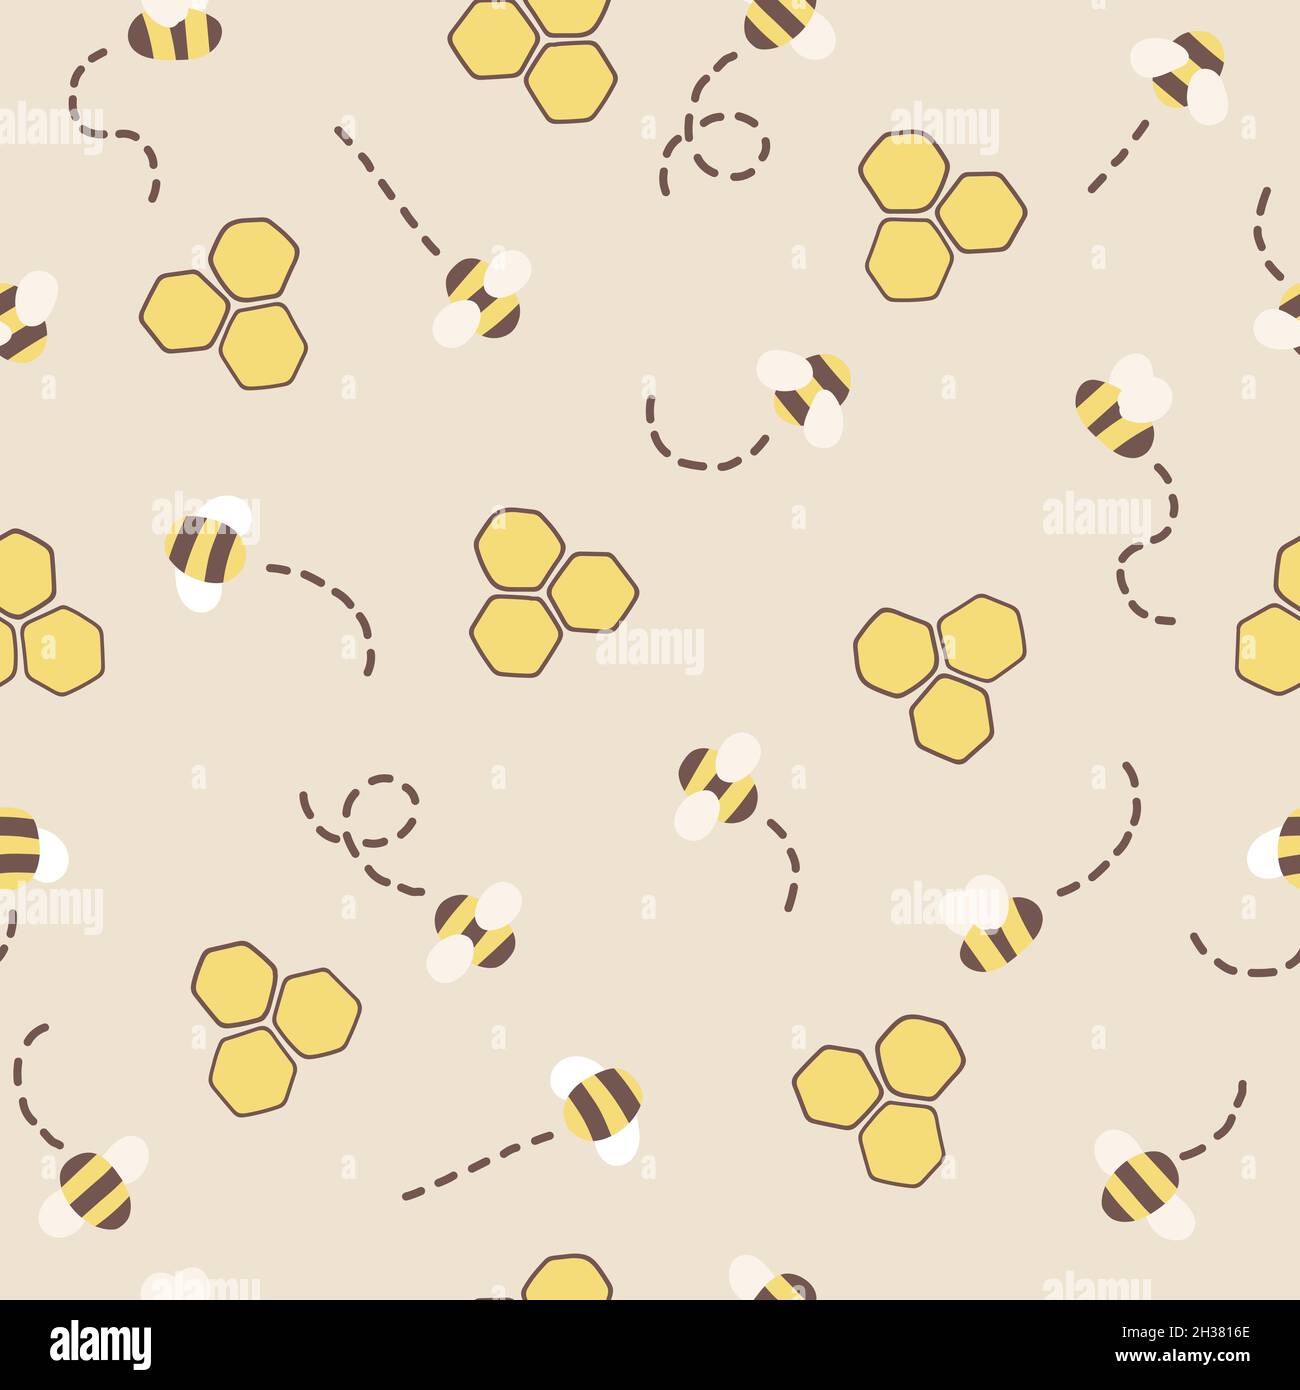 fundo xadrez amarelo  Ilustración de abeja, Fondos de colores, Ideas de  fondos de pantalla